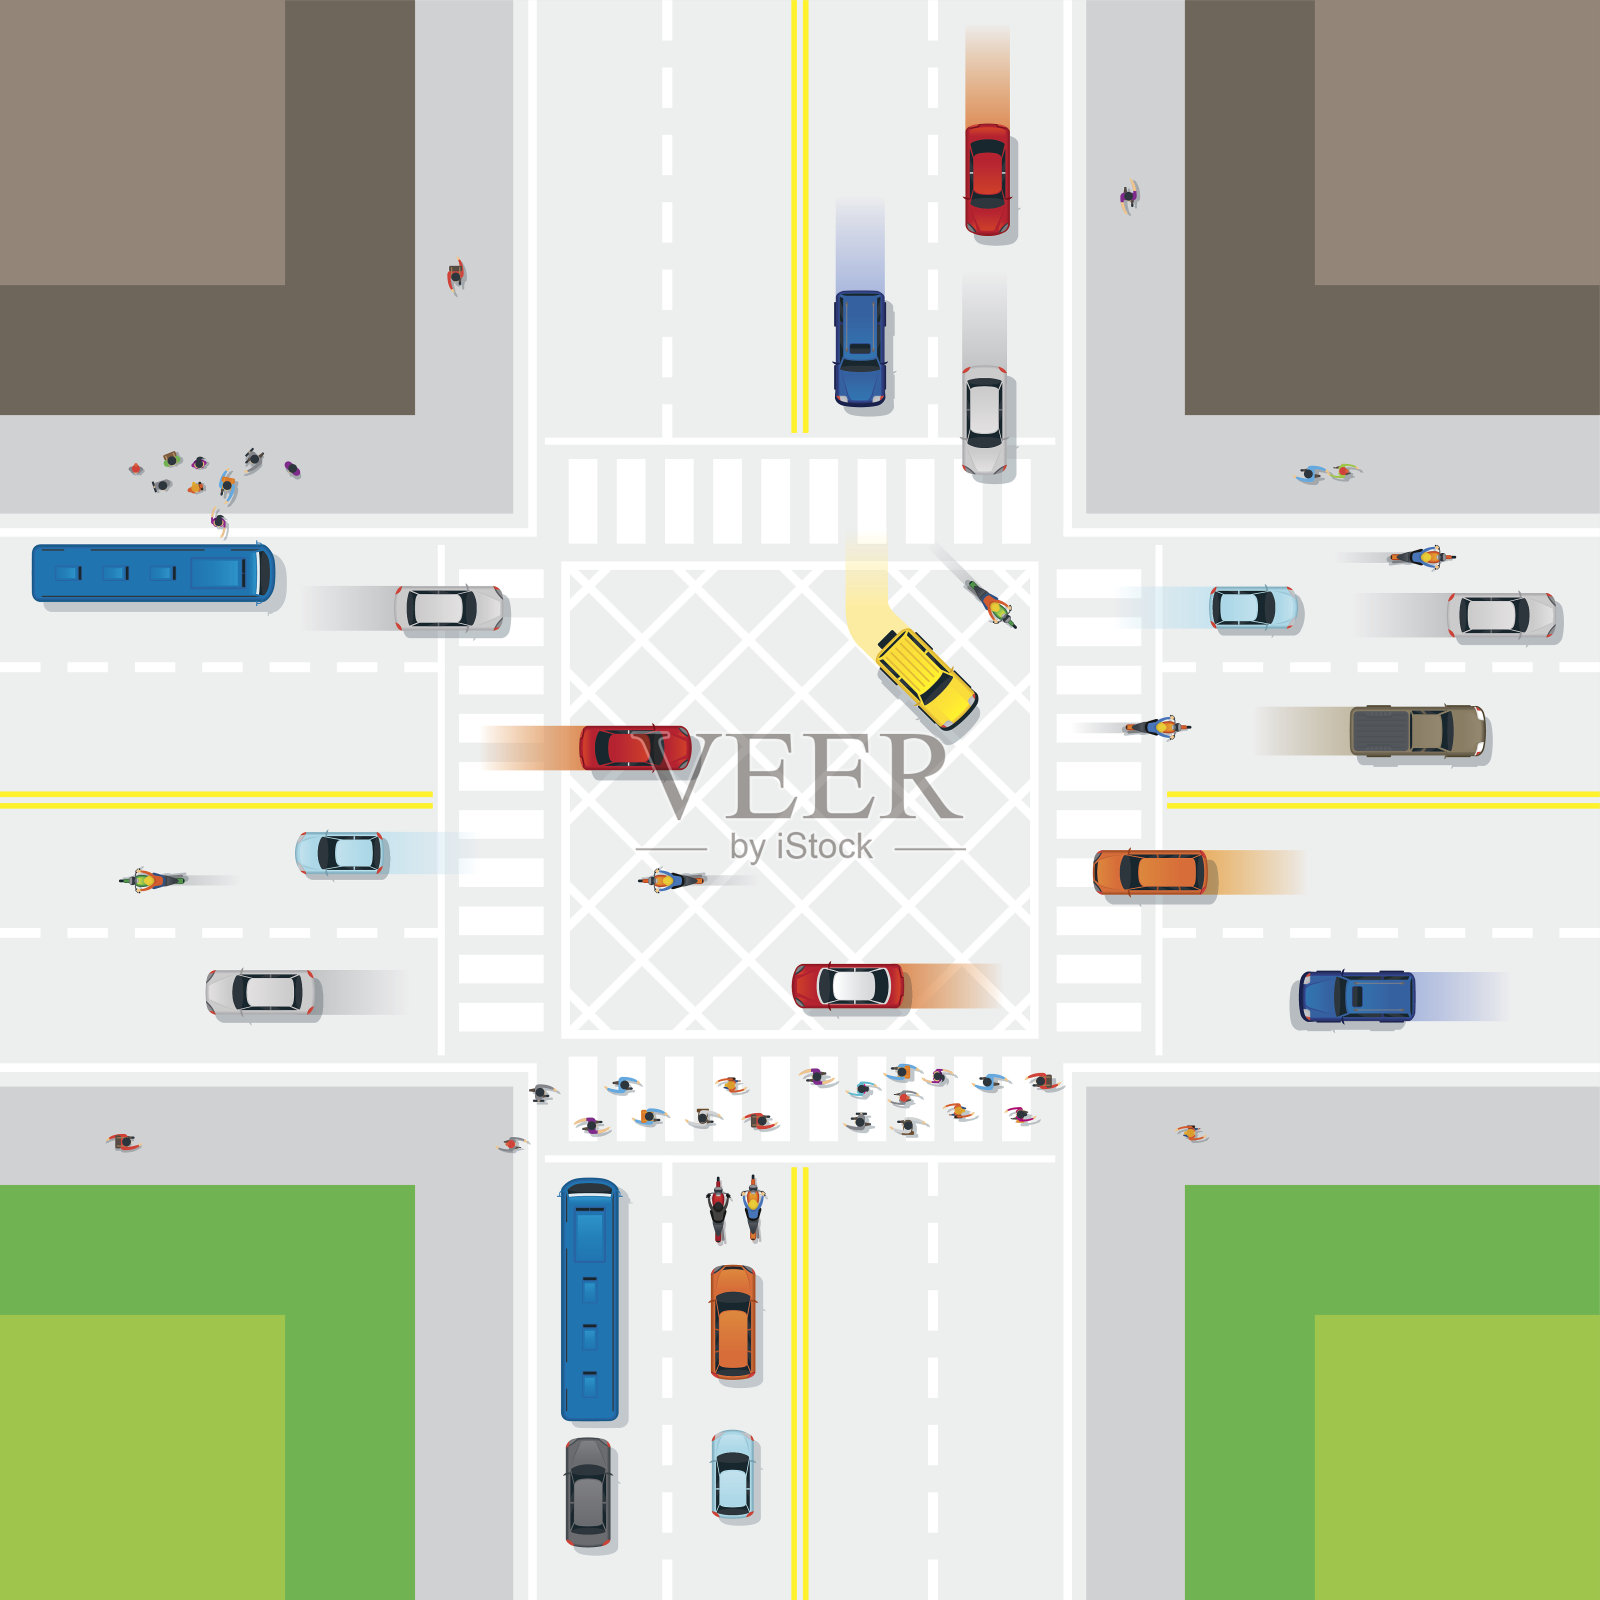 行人及车辆的道路及交汇处插画图片素材